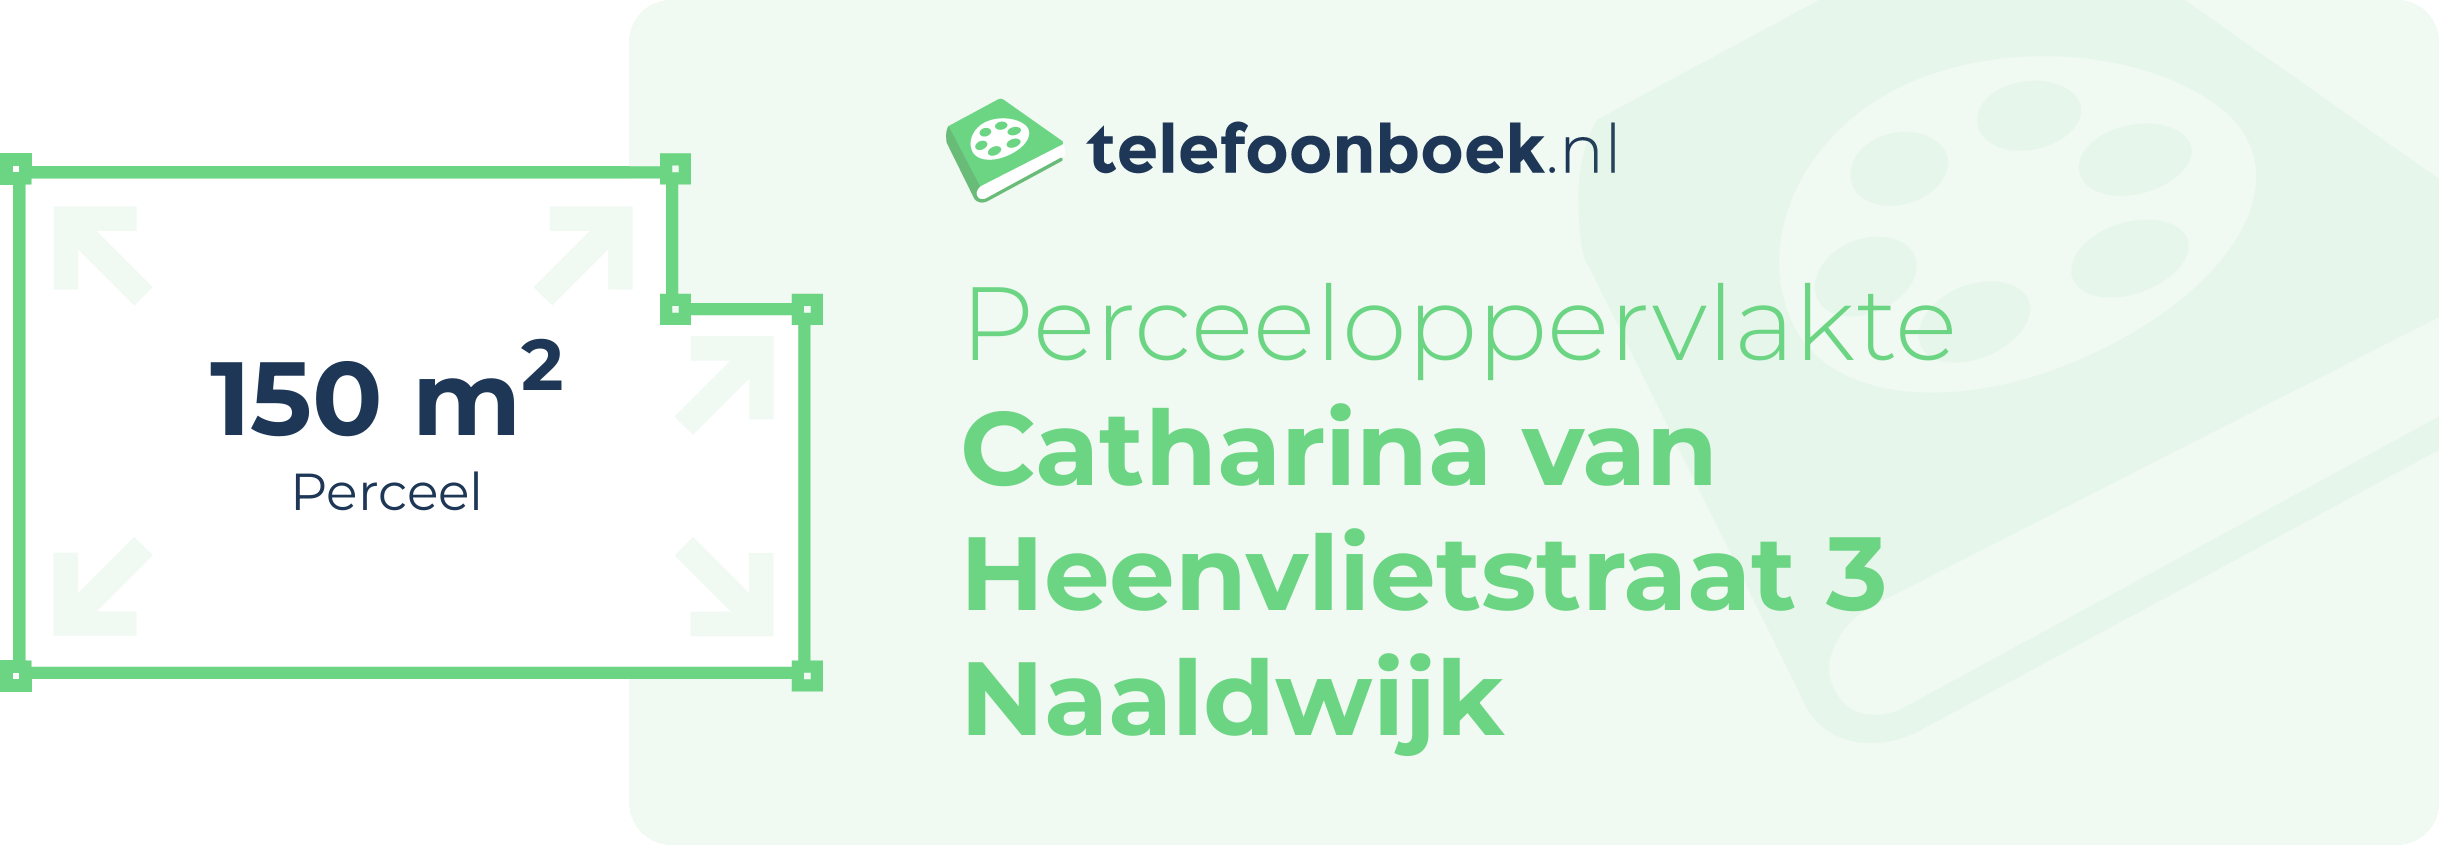 Perceeloppervlakte Catharina Van Heenvlietstraat 3 Naaldwijk